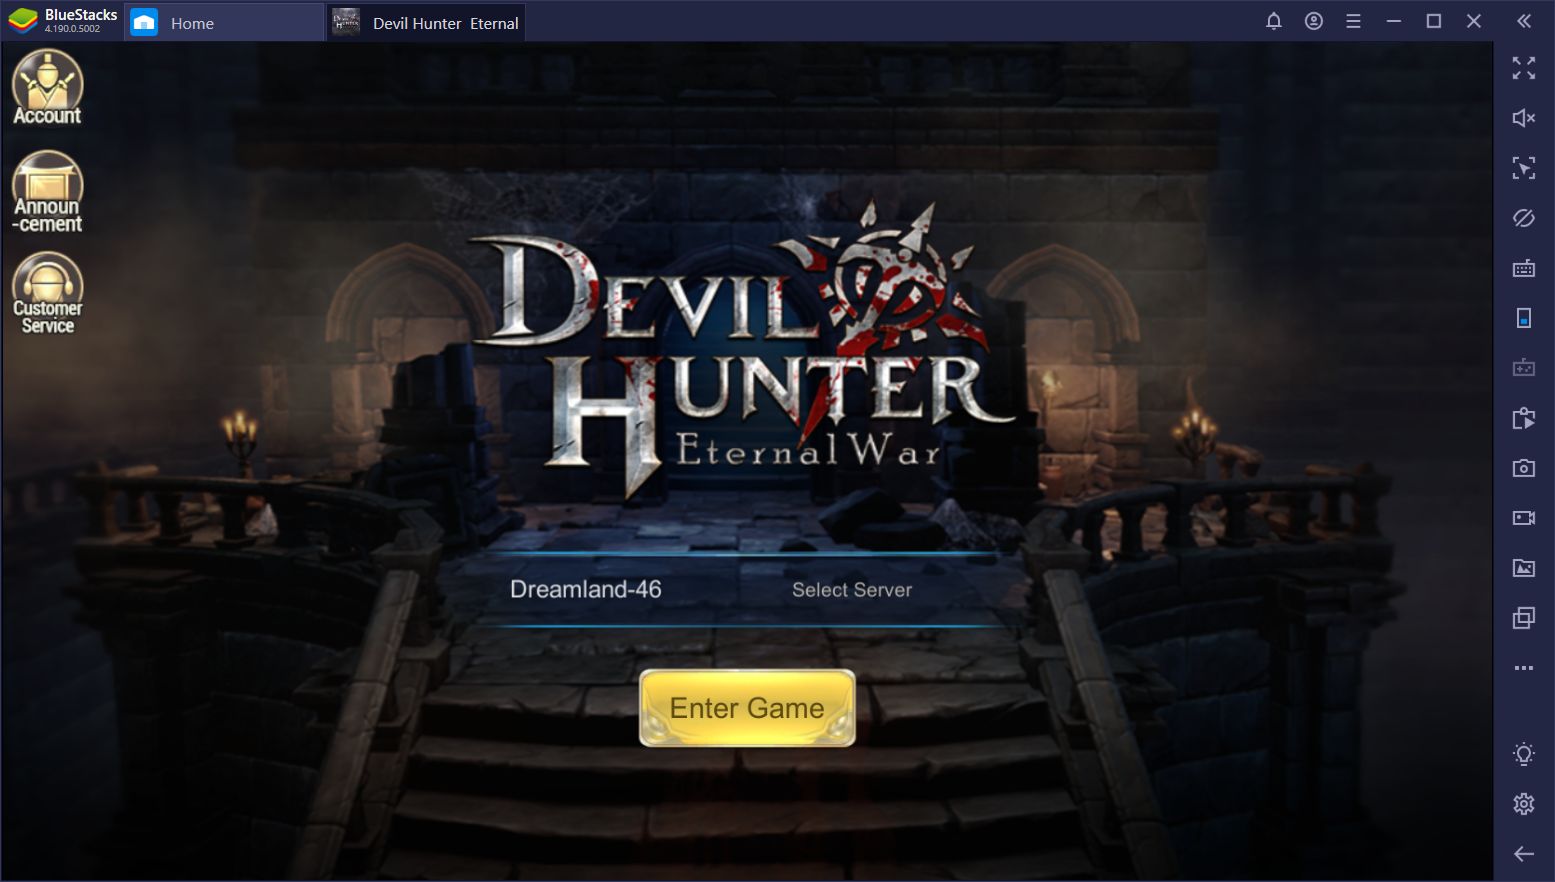 Devil Hunter: Eternal War - Beginner’s Guide for Getting Started in This Mobile MMORPG